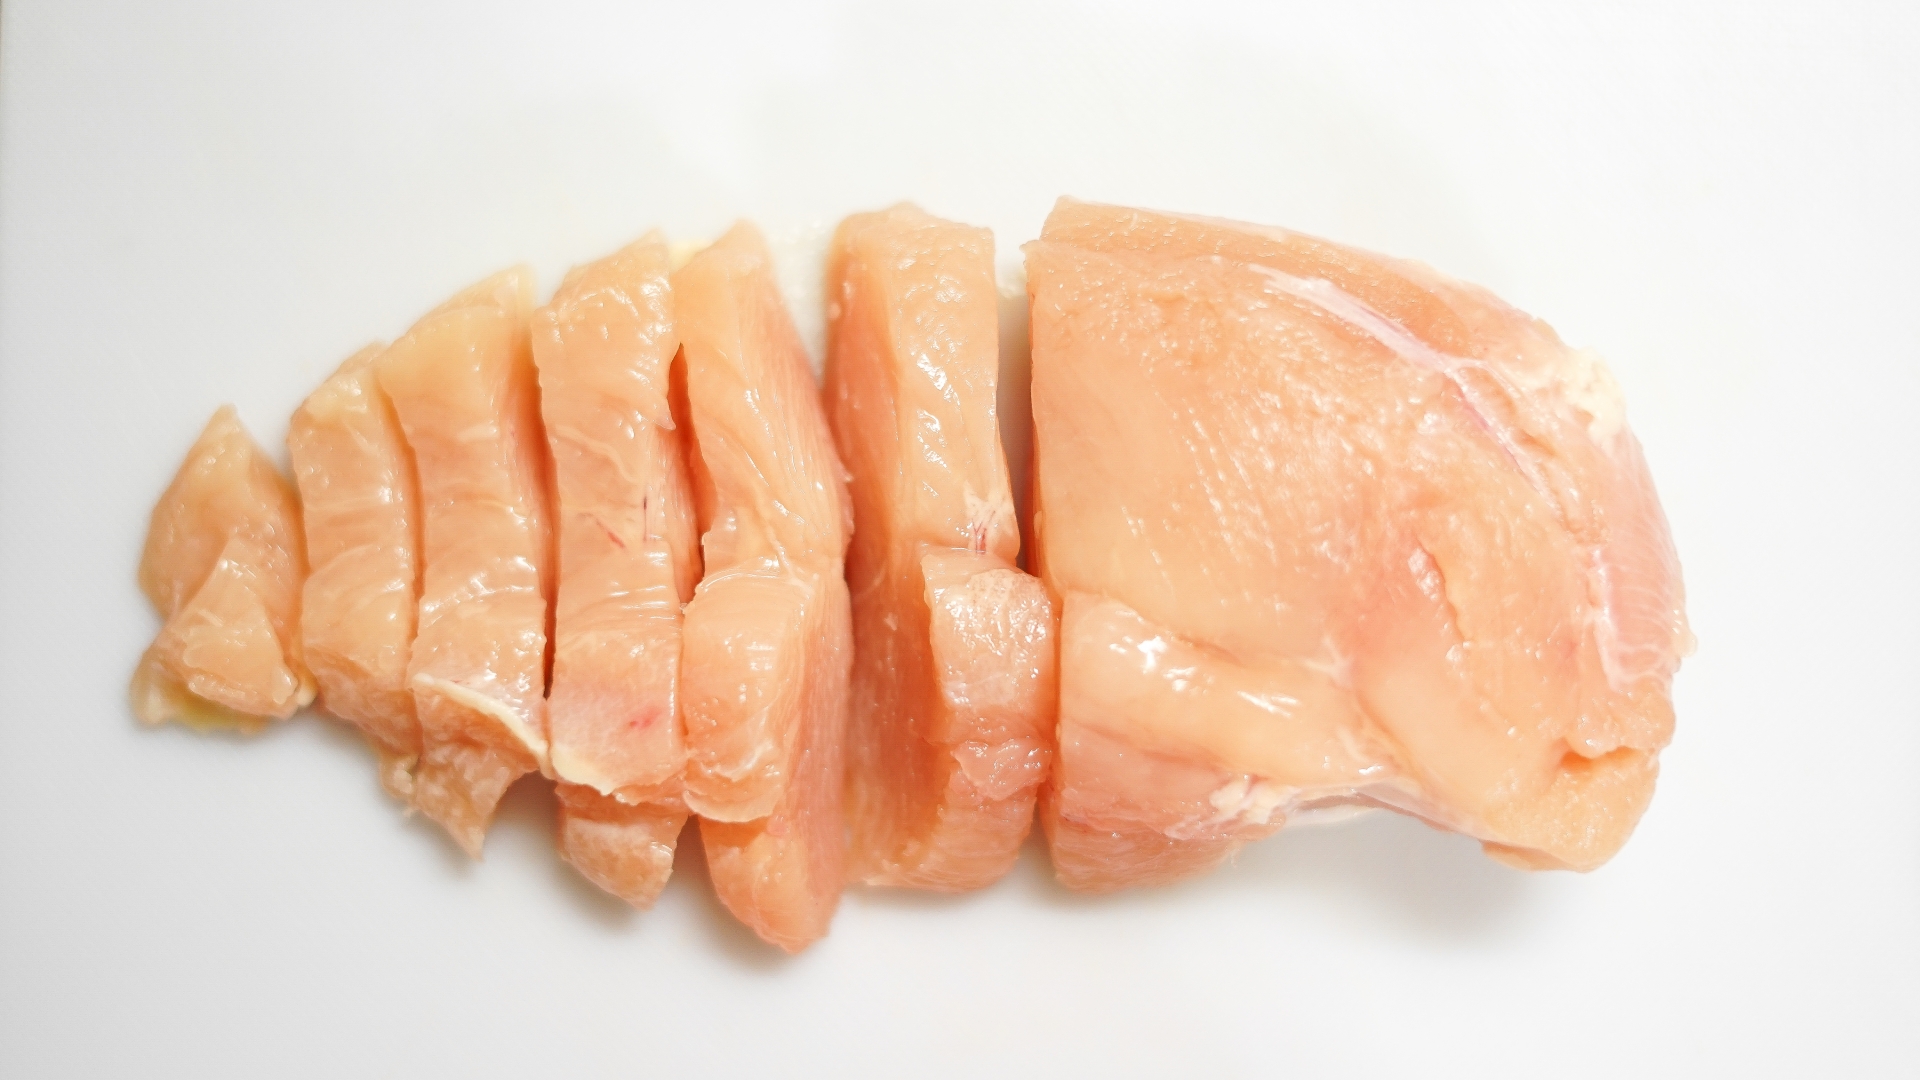 ノンオイル調理 簡単すぎておいしい鶏胸肉レシピ ハッチェのブログ